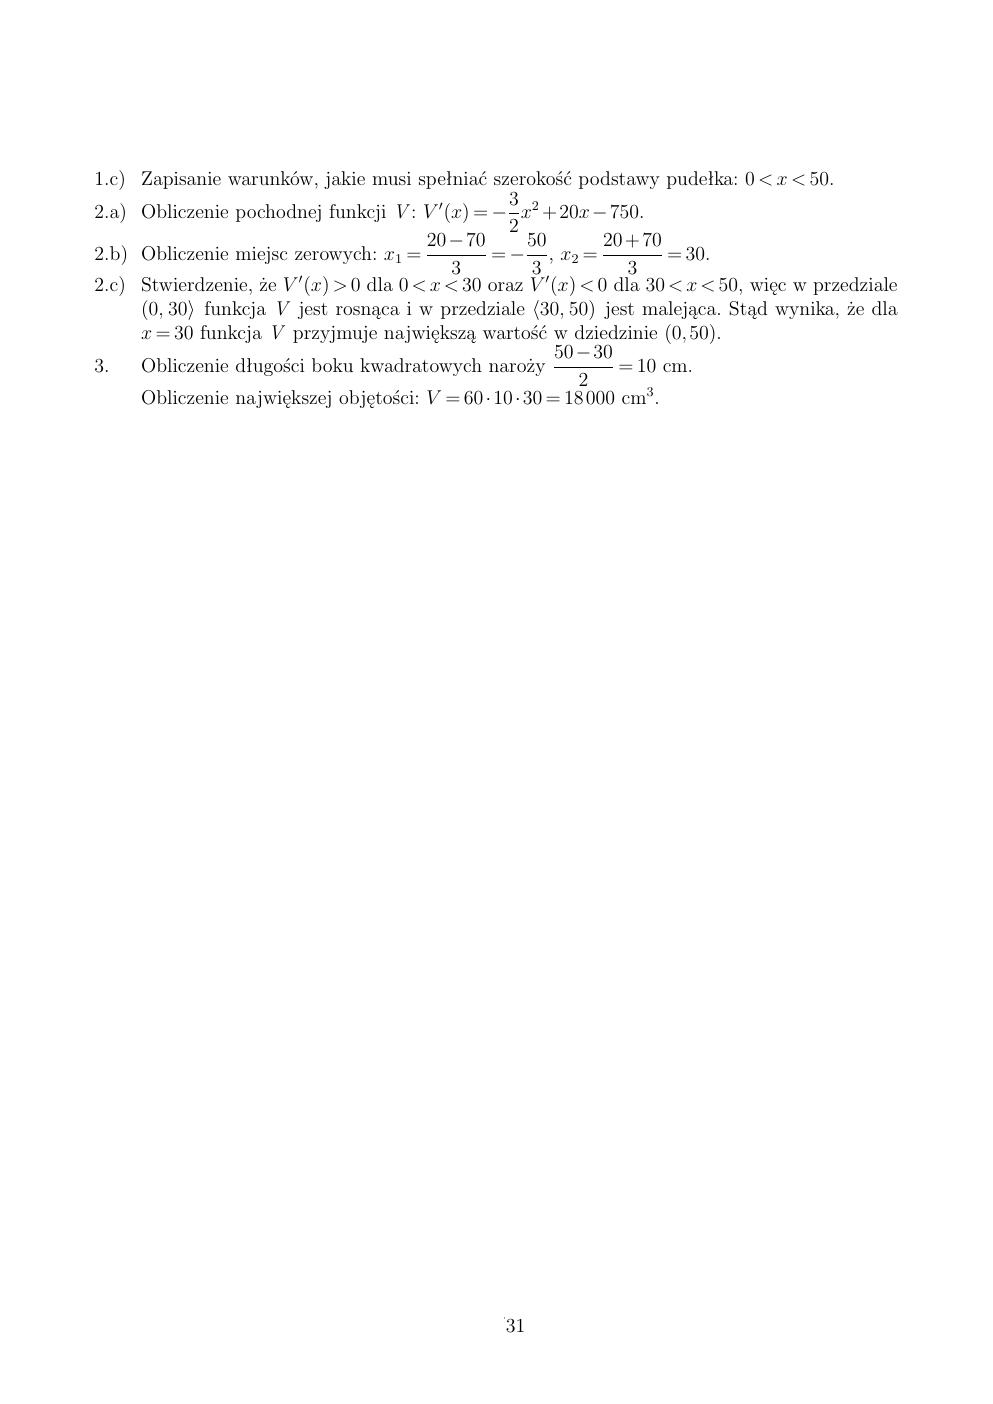 zasady oceniania - odpowiedzi - matematyka rozszerzony - matura 2015 przykładowa-31